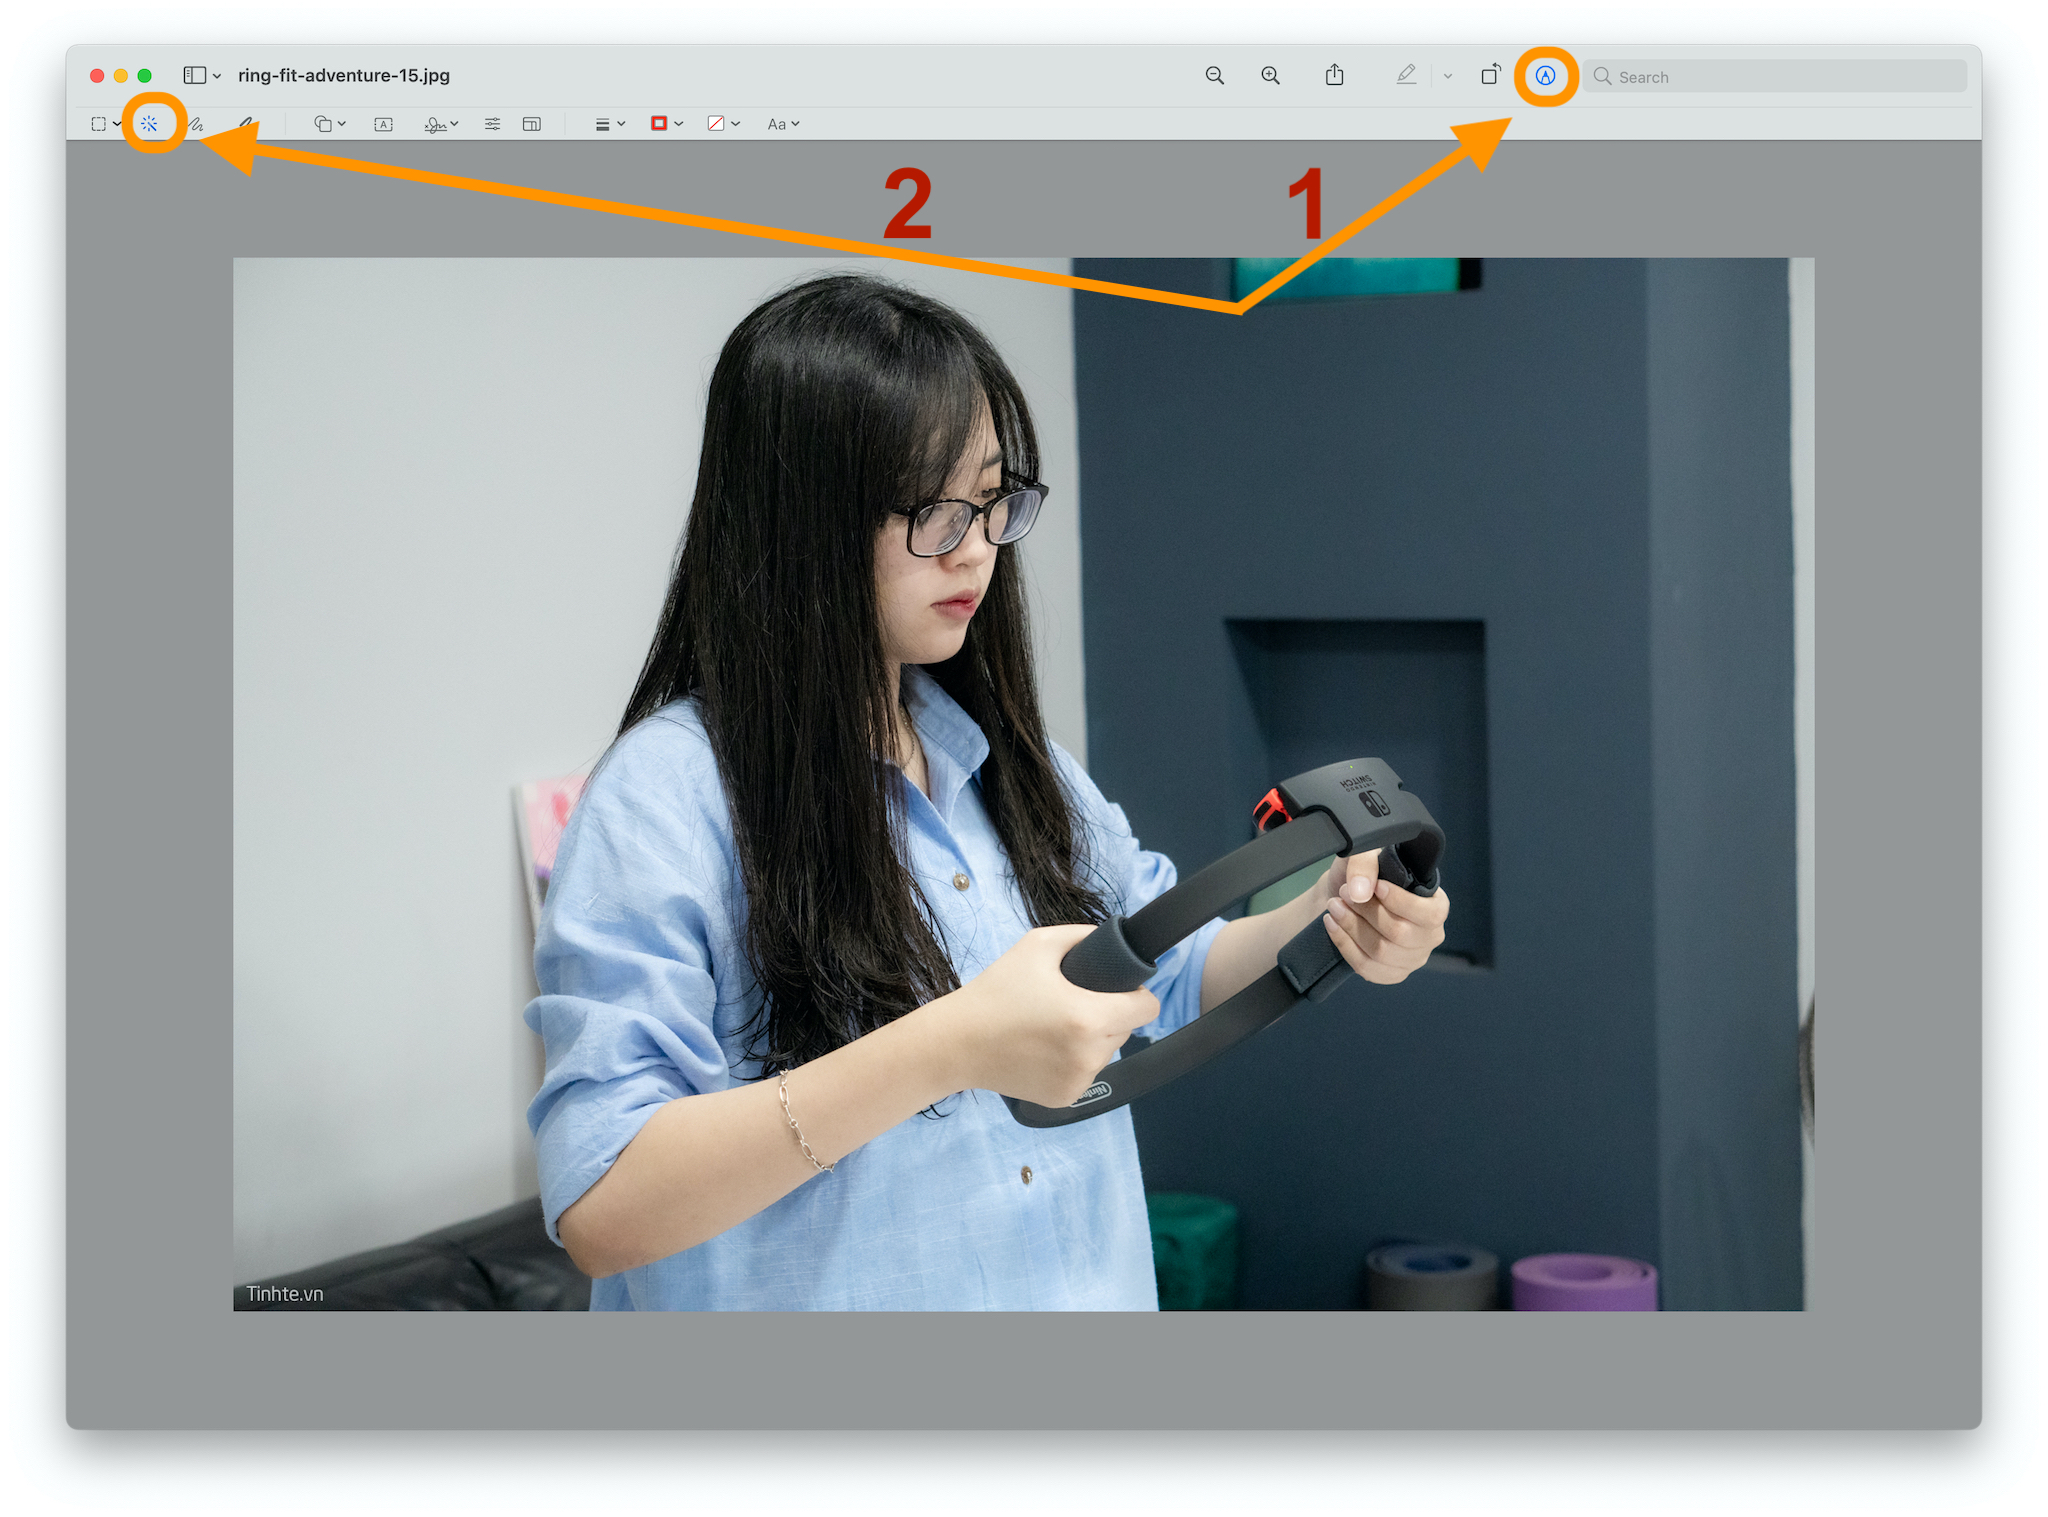 Hướng dẫn tách nền trong Photoshop trên macOS 2024 sẽ giúp bạn dễ dàng tạo ra những bức ảnh đẹp mắt và chuyên nghiệp hơn. Với giao diện thân thiện và tính năng cải tiến, việc tách nền trở nên đơn giản hơn bao giờ hết. Không còn bị giới hạn bởi hệ điều hành, bạn có thể sử dụng tính năng này trên mọi thiết bị của bạn.